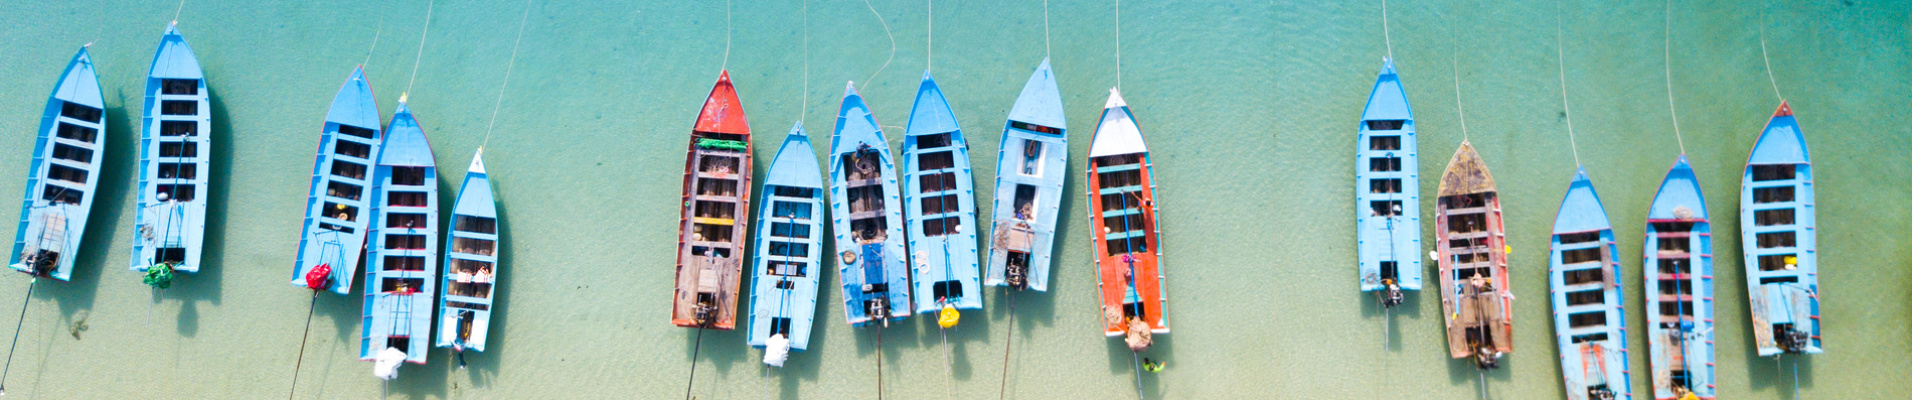 bateaux de pêche alignés, Thaïlande